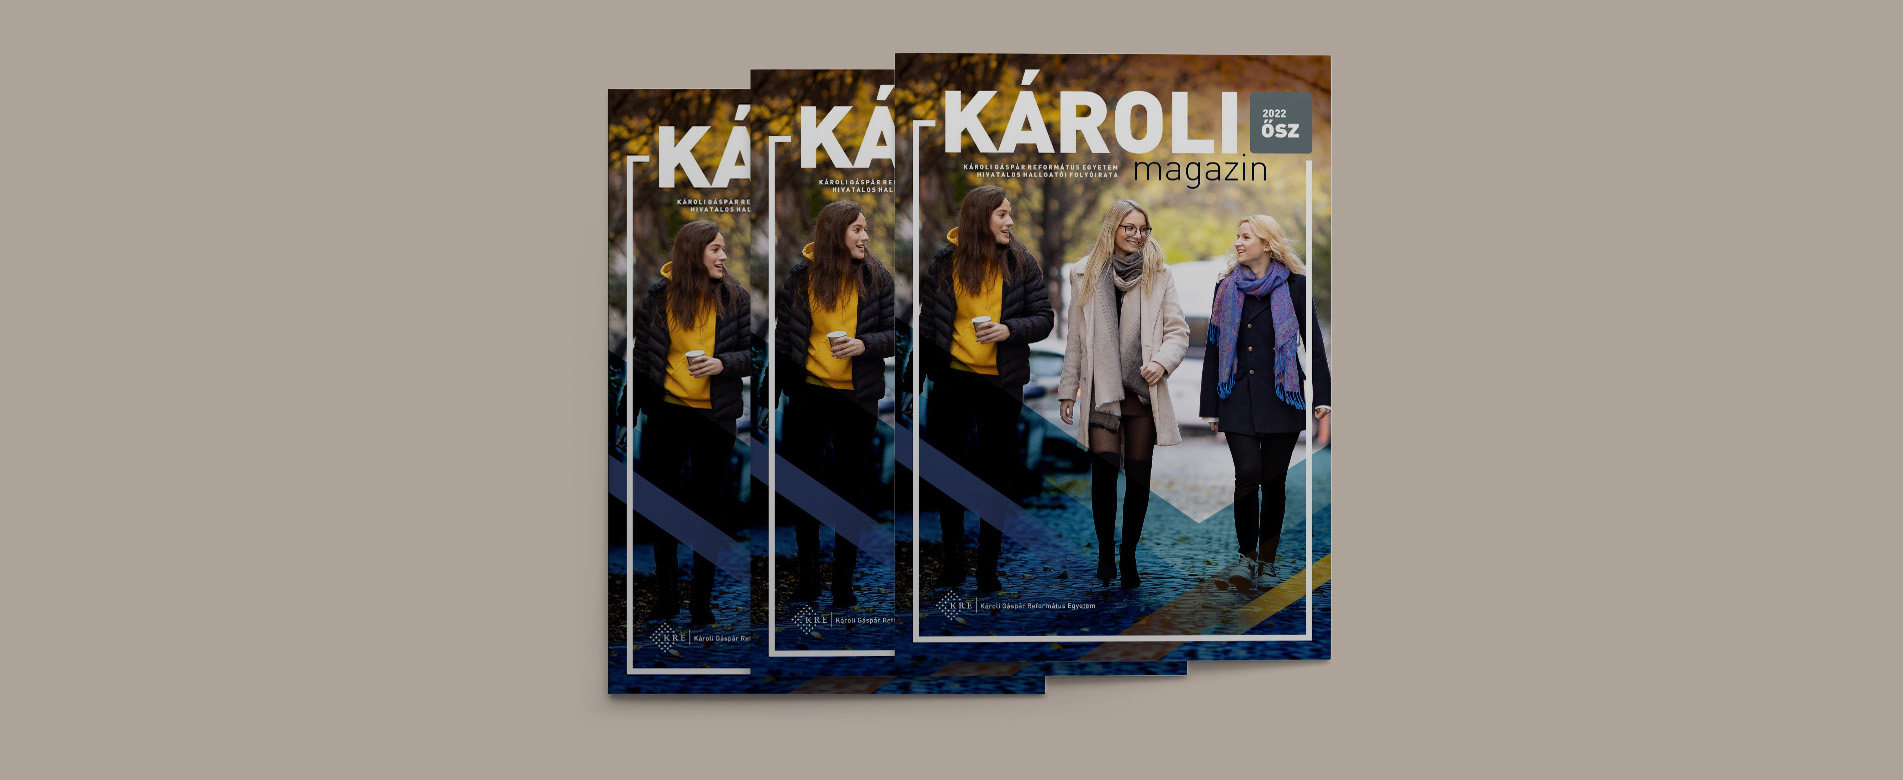  The latest issue of Károli Magazine is published!